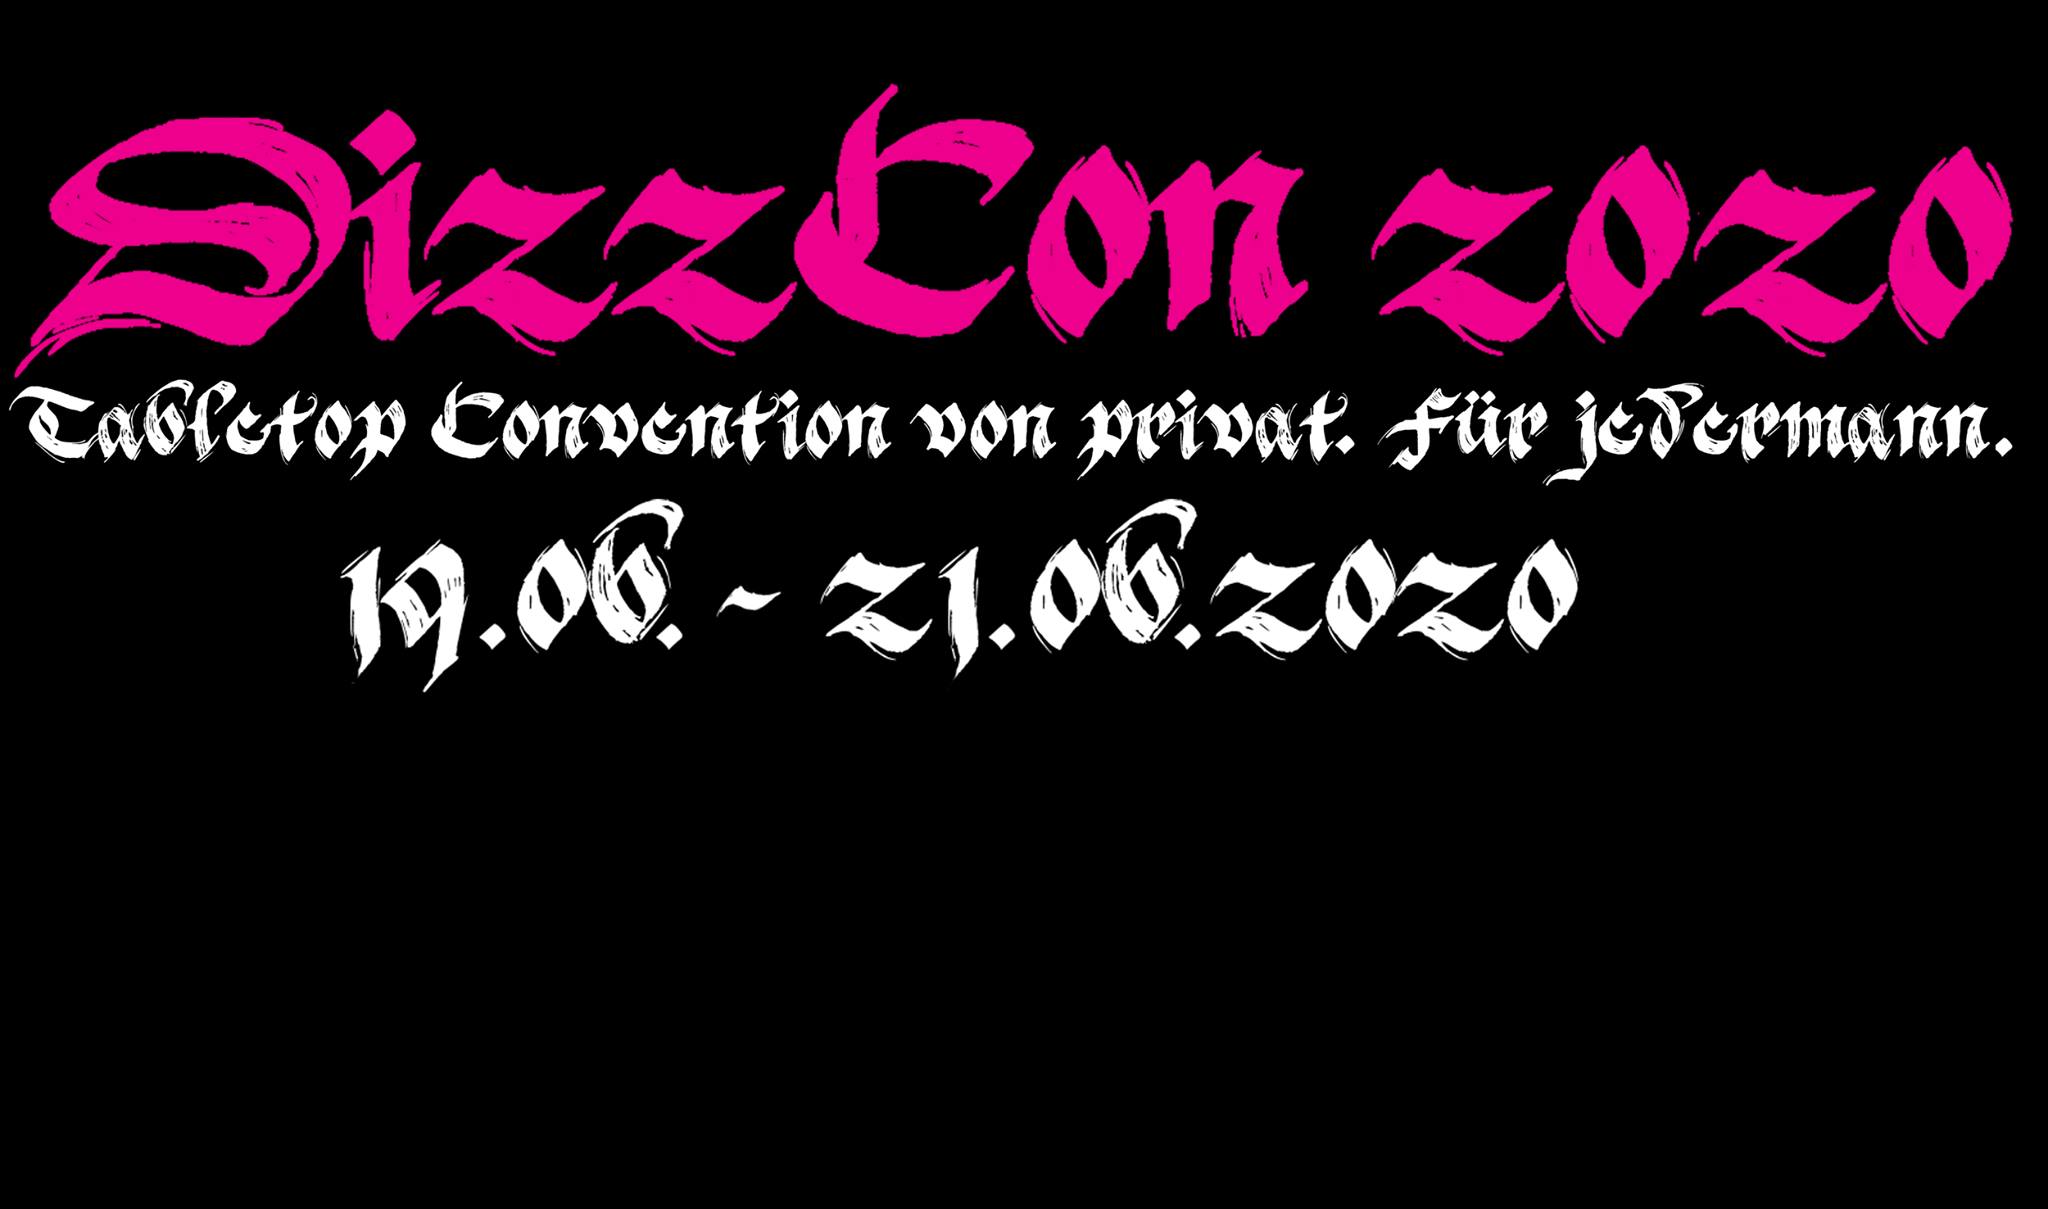 DizzCon 2020